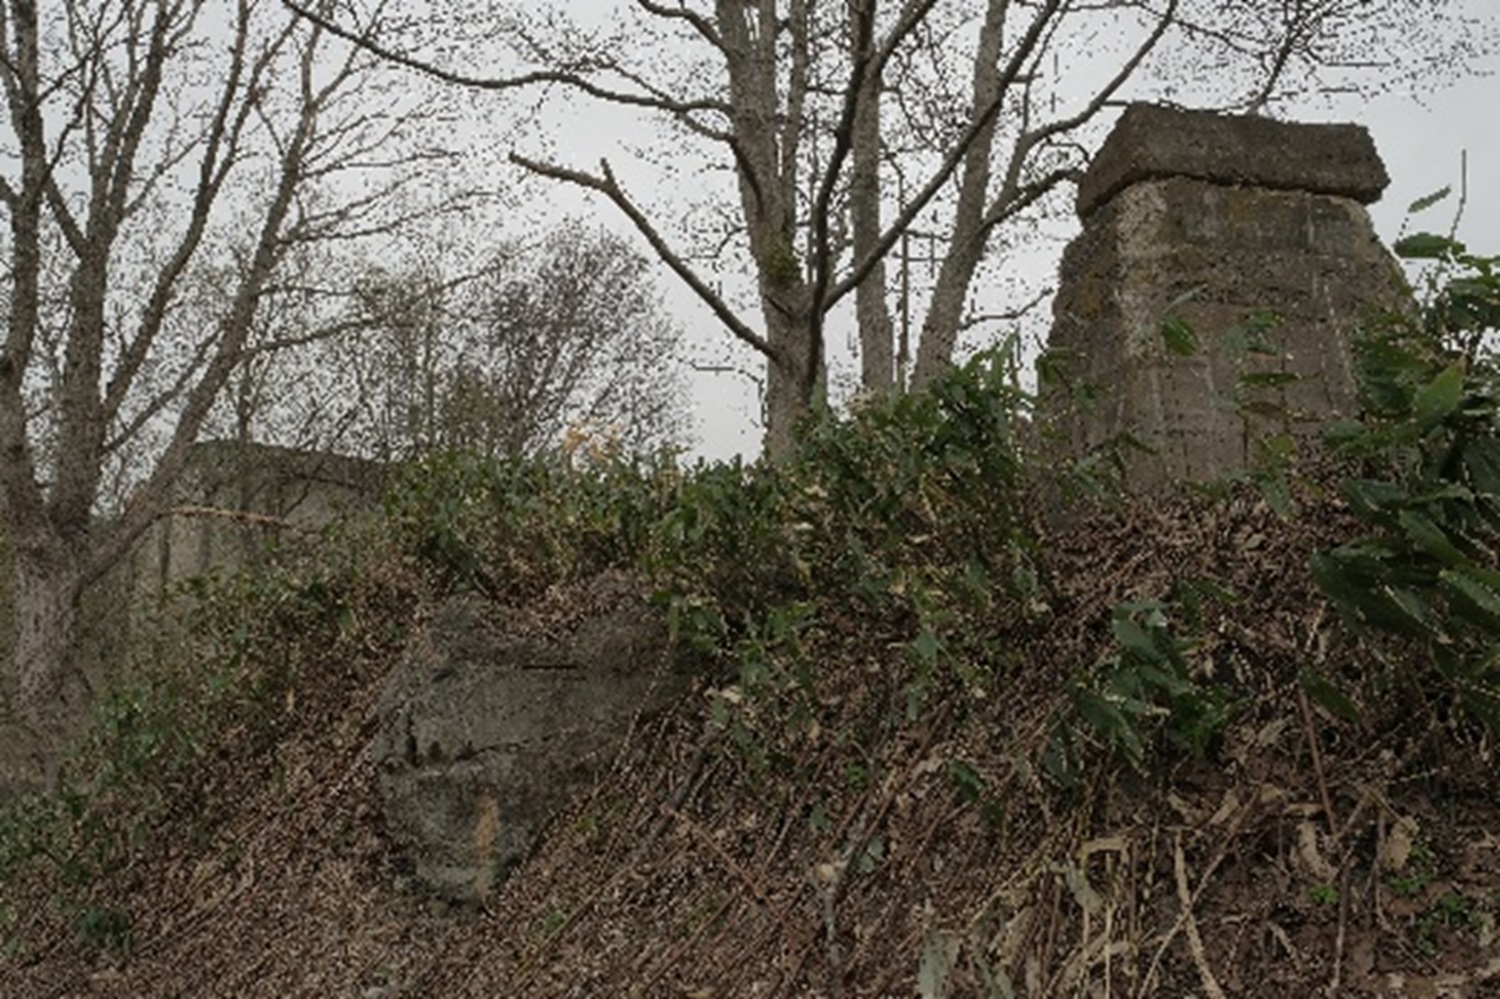 ホッパーの背後は斜面となっており、耕作地の敷地になっているようだ。傍らには炭鉱時代の遺構が残されていた。